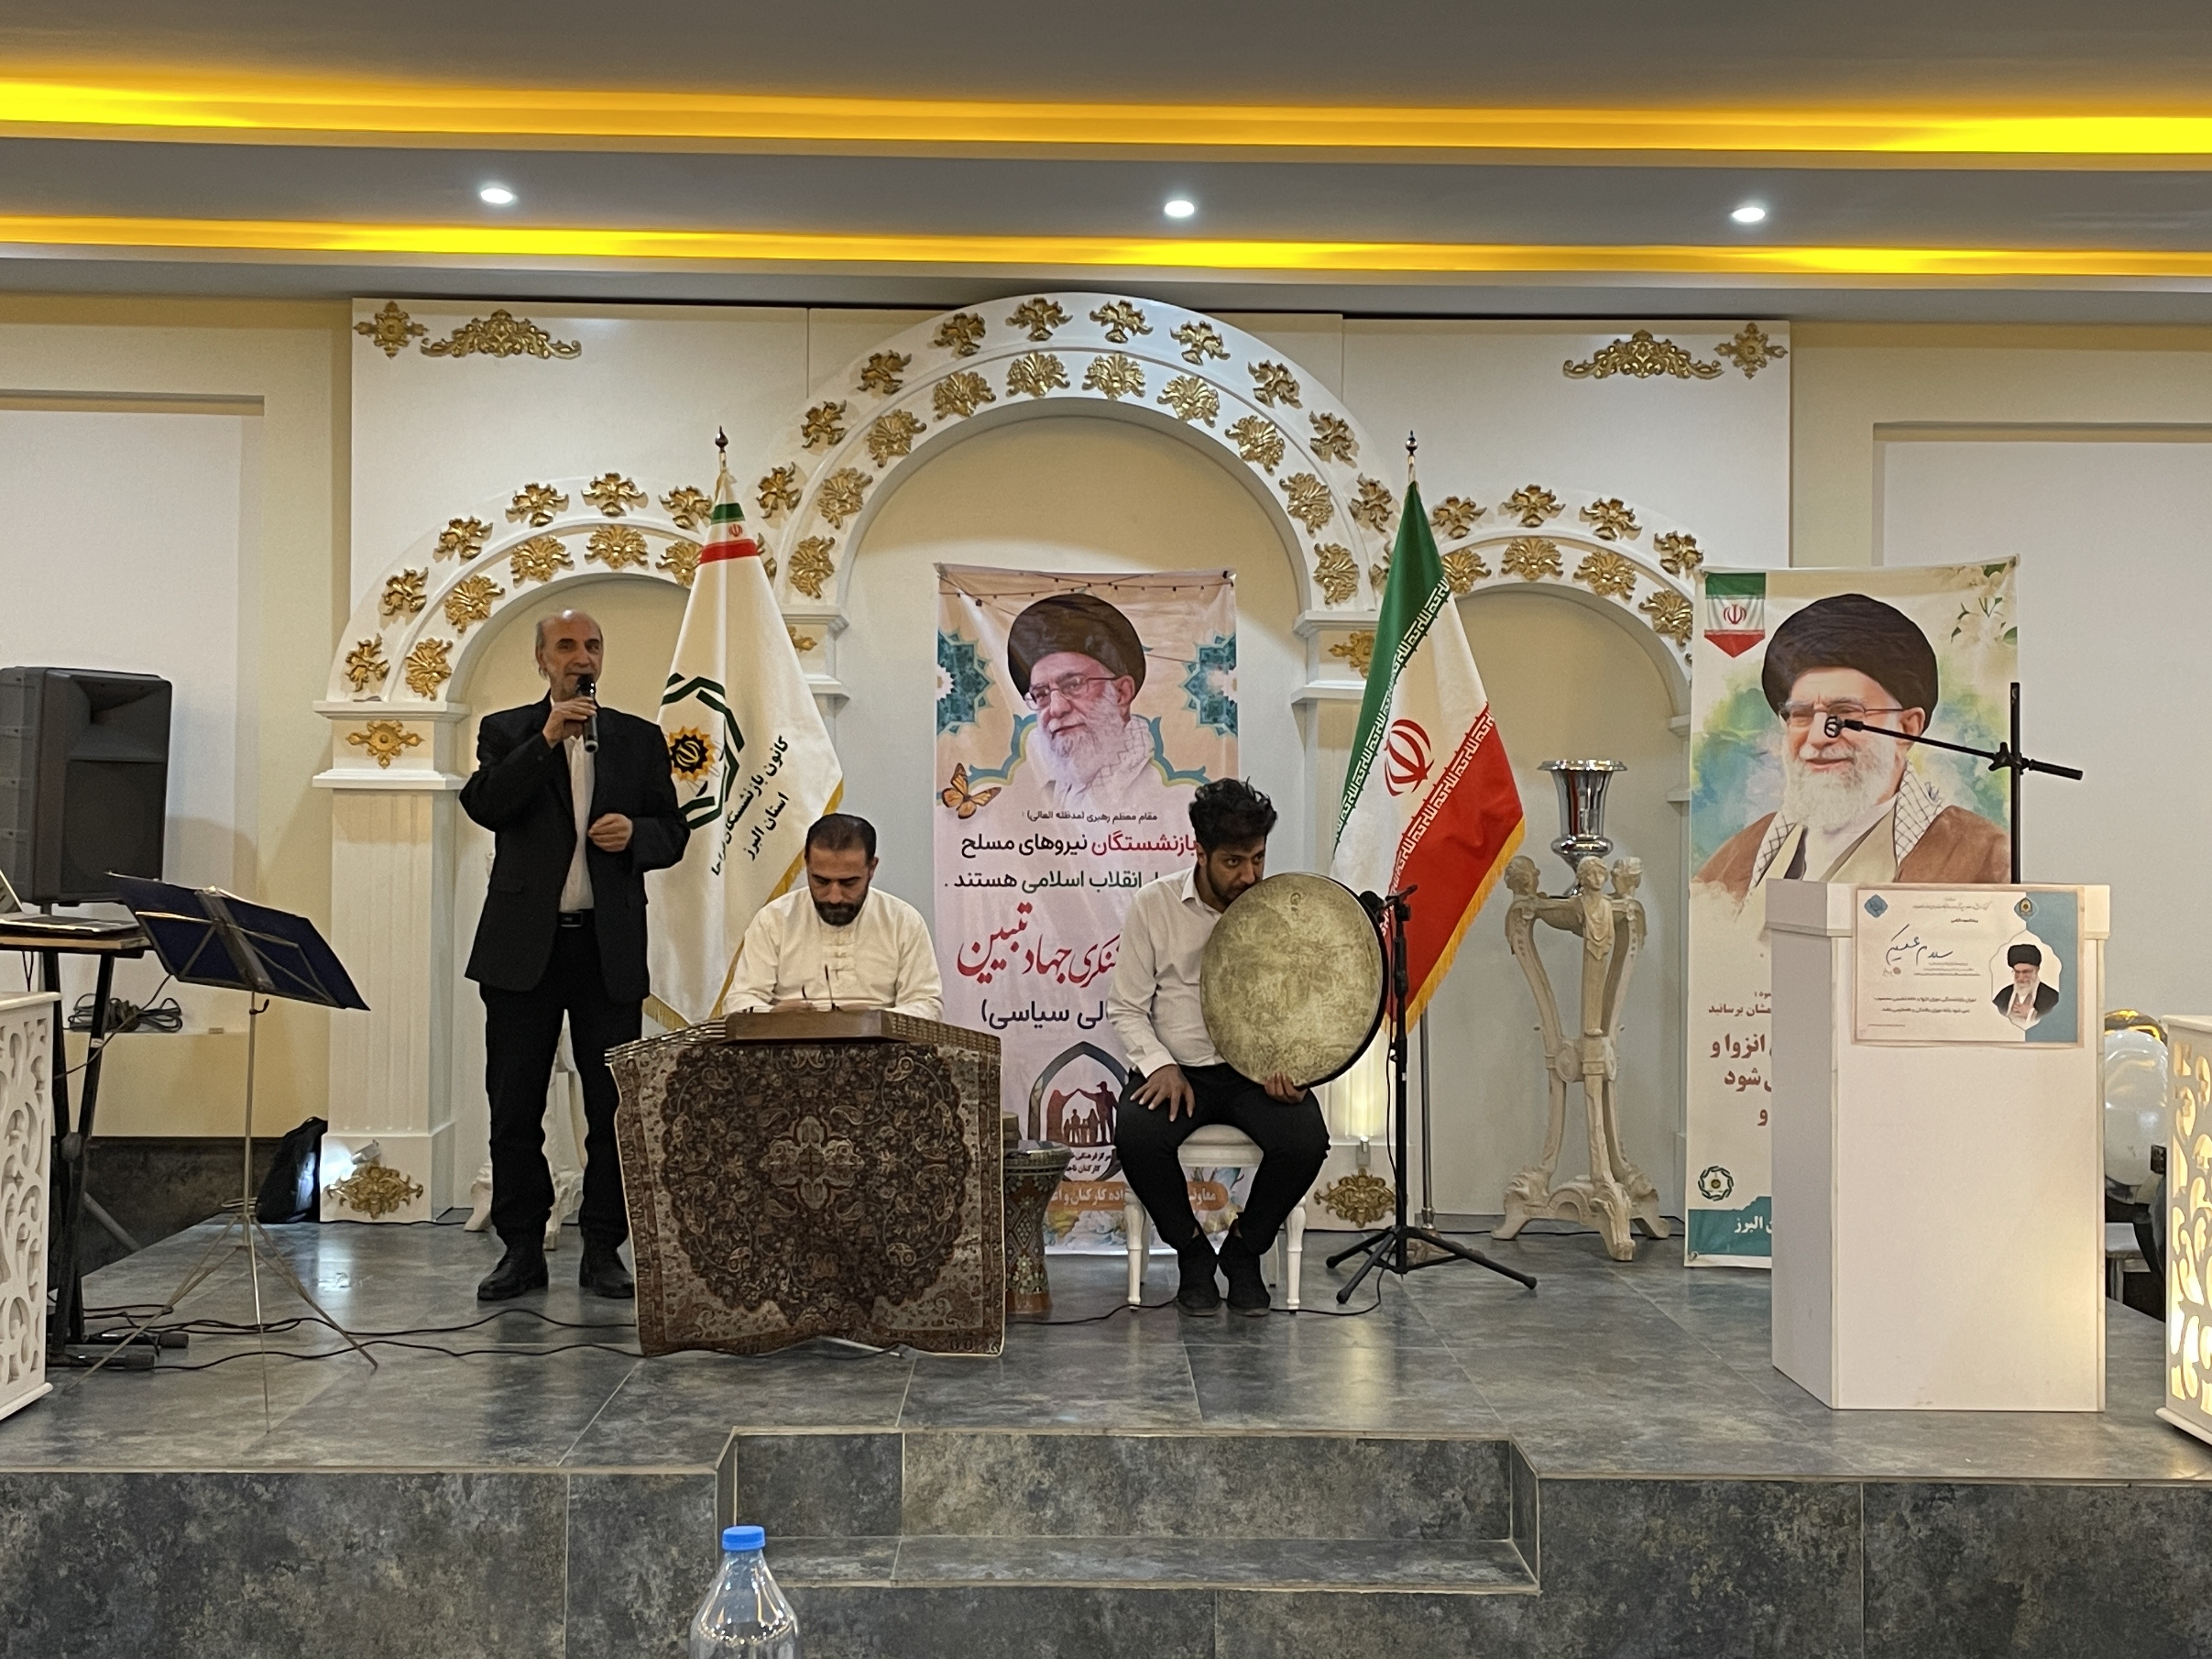 به مناسبت مبعث پیامبر اکرم(ص) و دهه مبارک فجر مراسم ضیافتی با حضور 57عضو کانون به همراه خانواده در استان البرز برگزار شد.